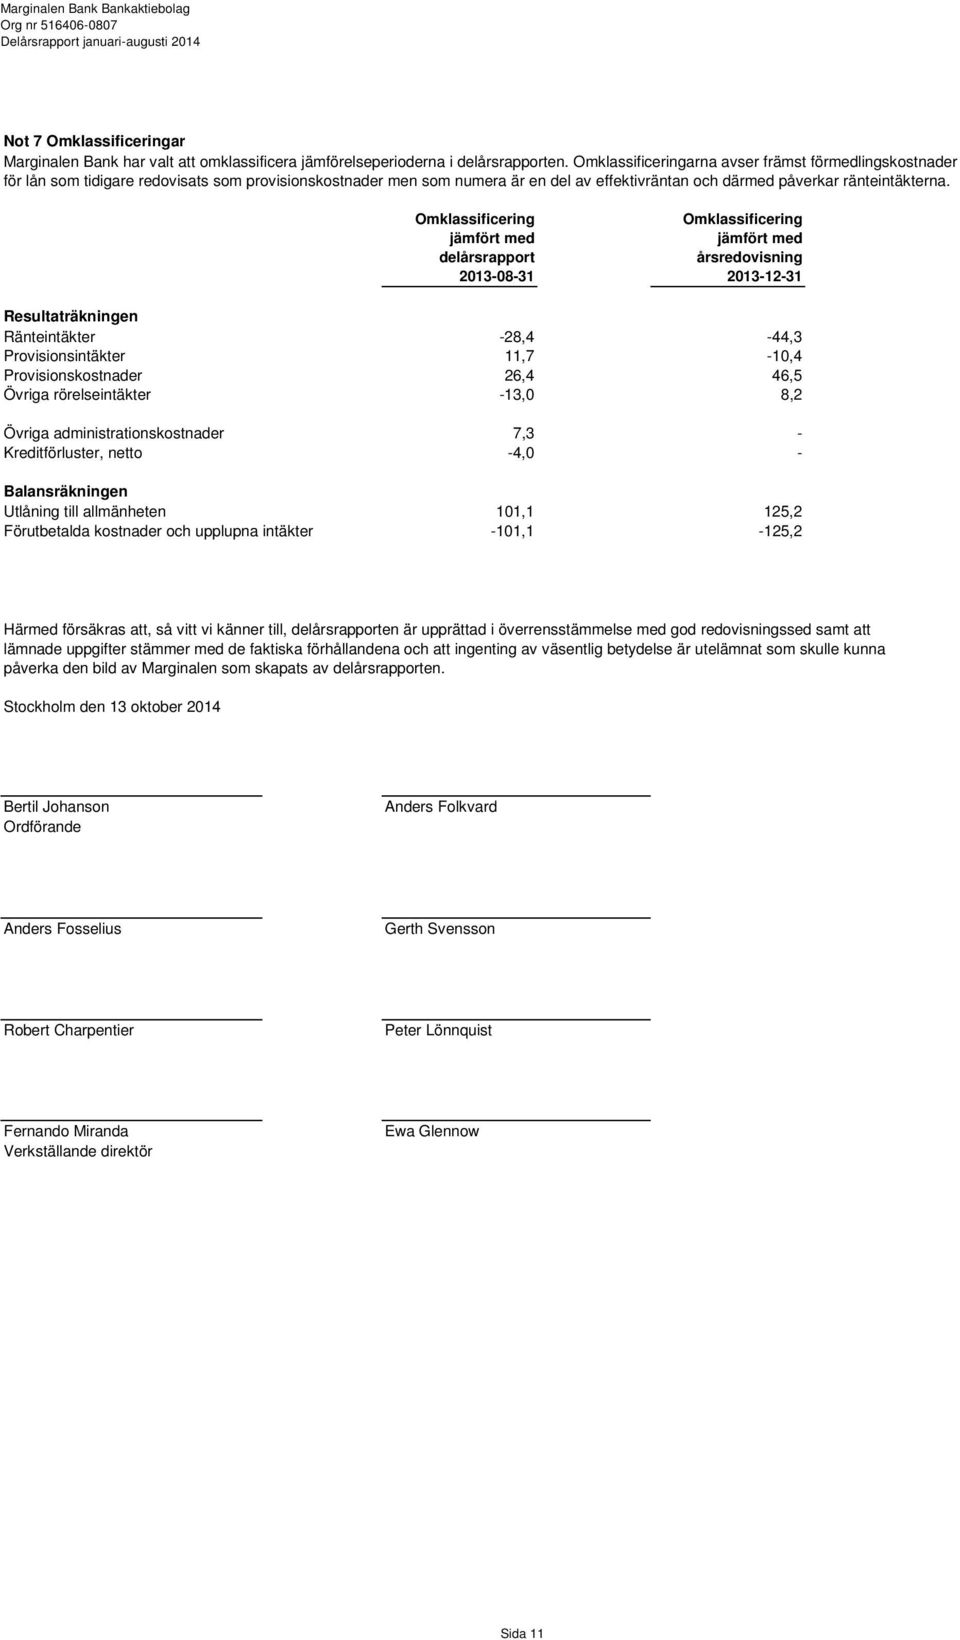 Omklassificering jämfört med delårsrapport 2013-08-31 Omklassificering jämfört med årsredovisning 2013-12-31 Resultaträkningen Ränteintäkter -28,4-44,3 Provisionsintäkter 11,7-10,4